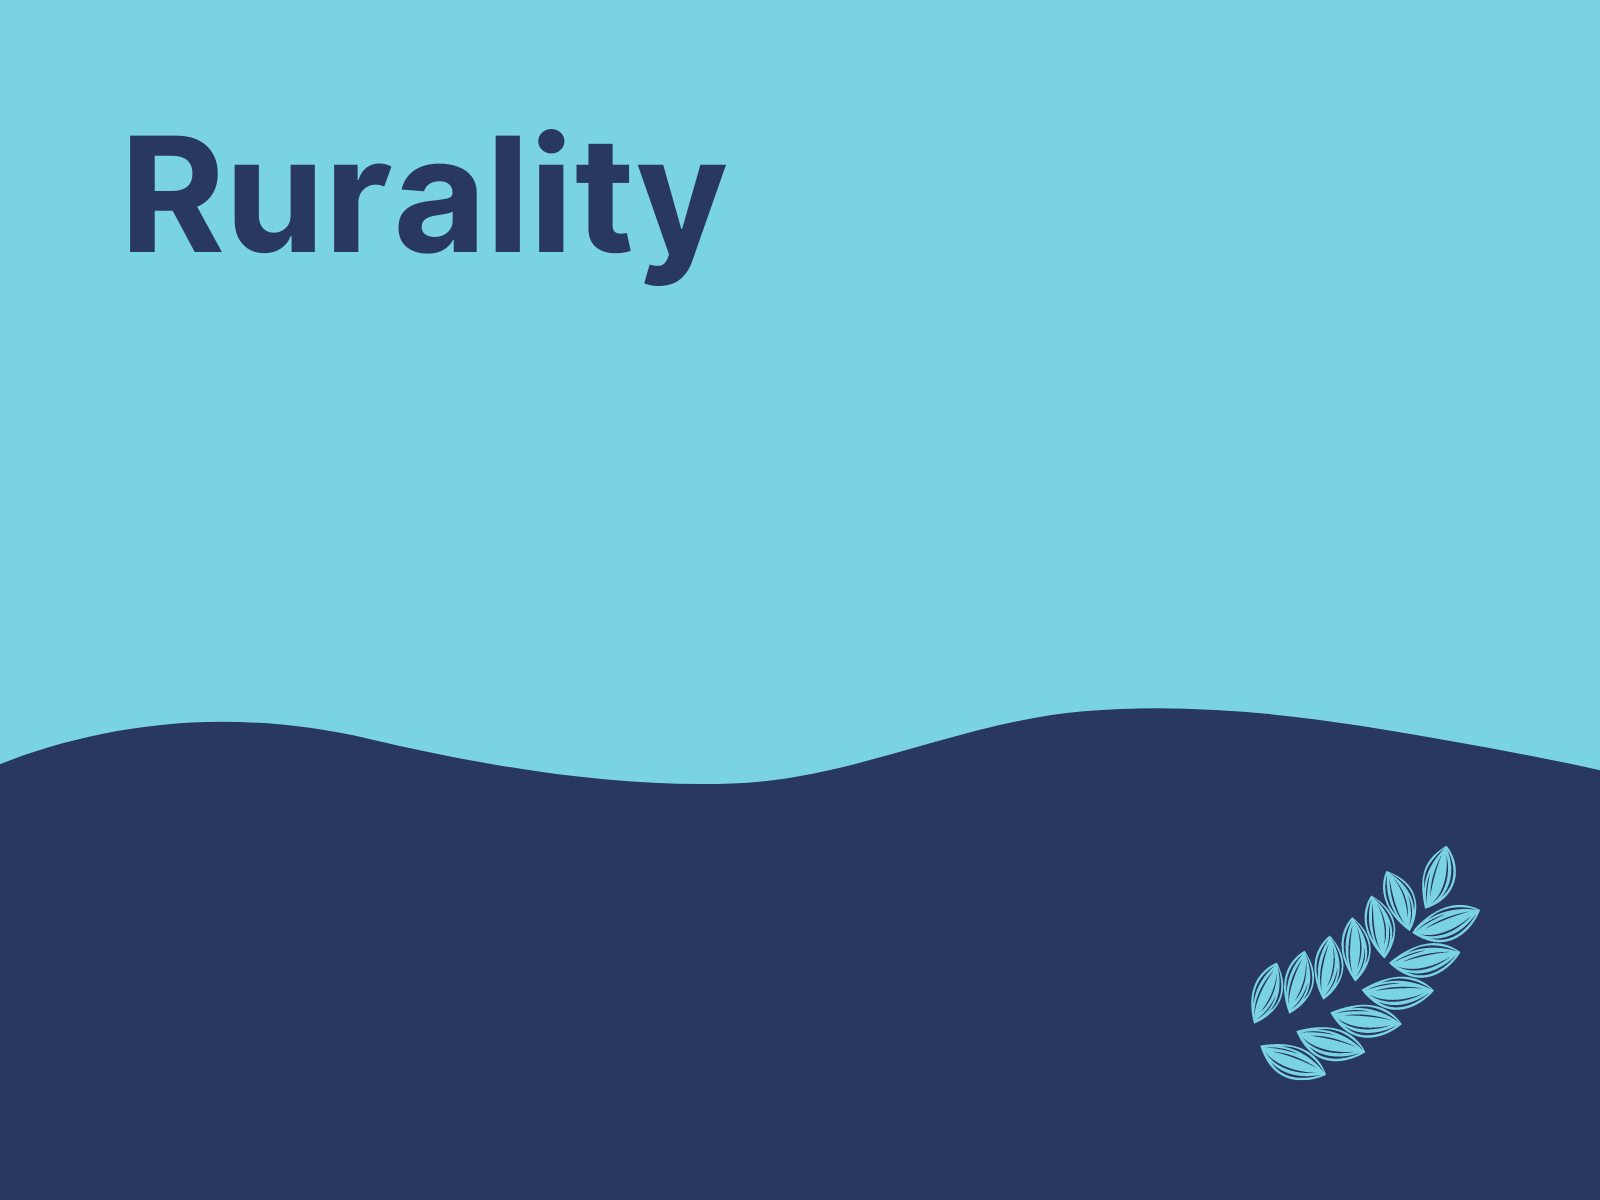 Rurality